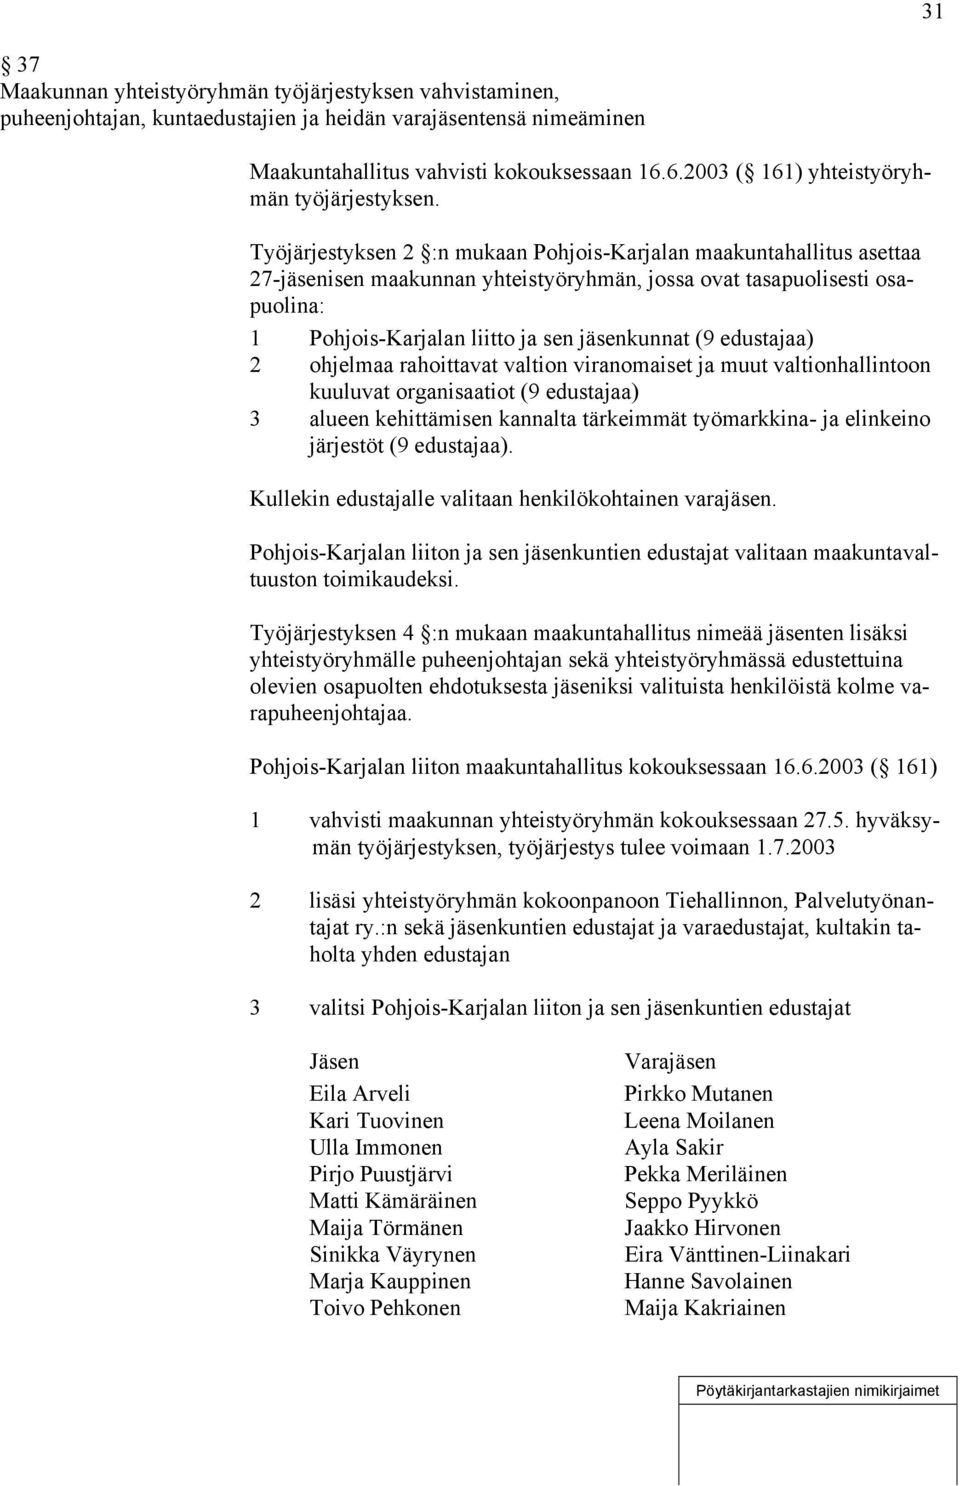 Työjärjestyksen 2 :n mukaan Pohjois-Karjalan maakuntahallitus asettaa 27-jäsenisen maakunnan yhteistyöryhmän, jossa ovat tasapuolisesti osapuolina: 1 Pohjois-Karjalan liitto ja sen jäsenkunnat (9